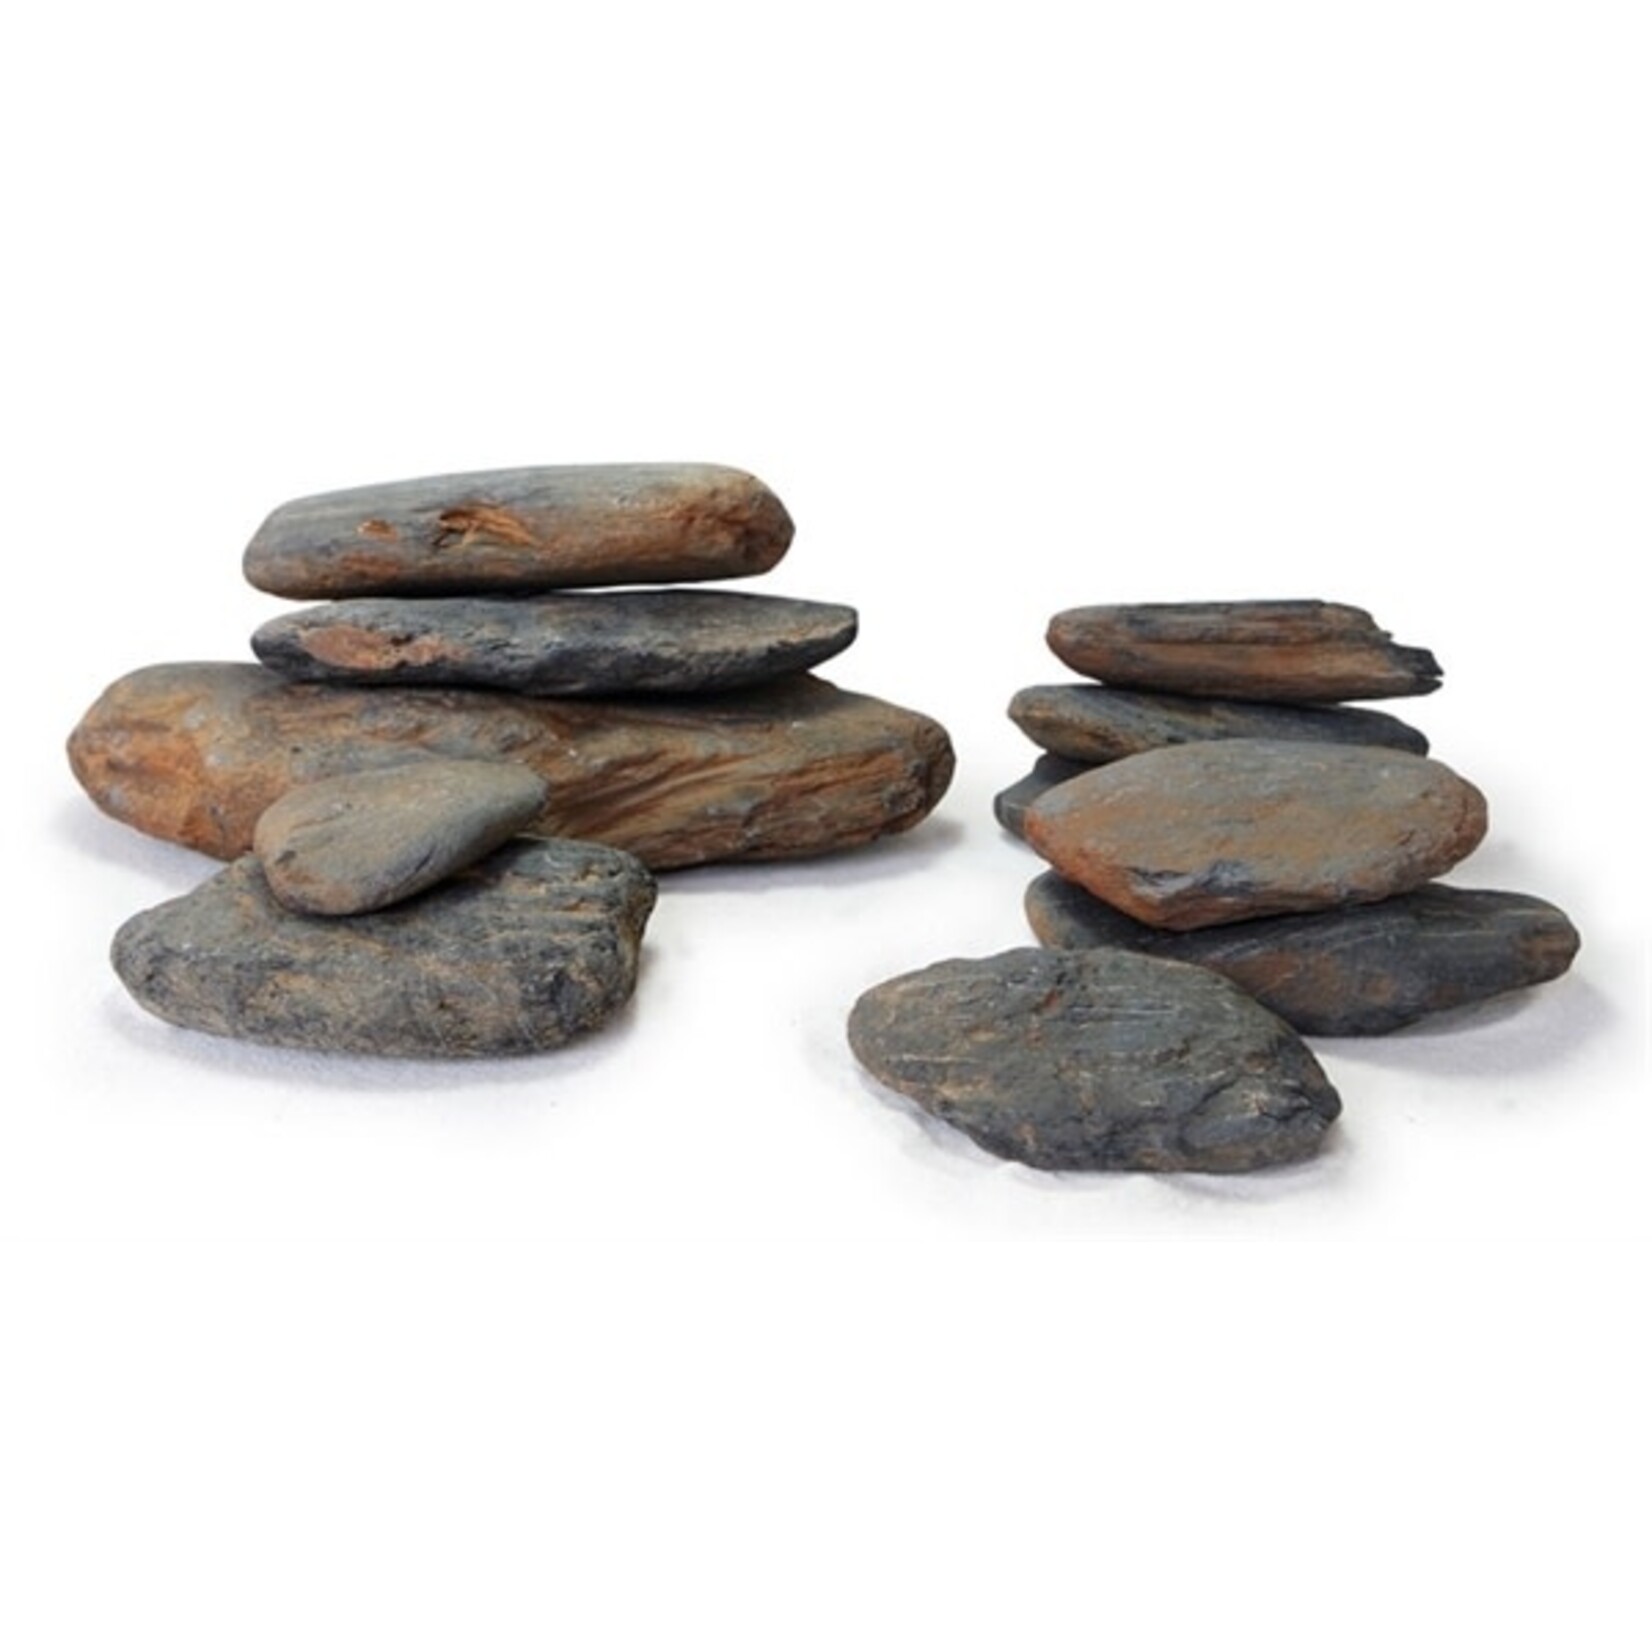 HS Aqua Dark pebble rock s (20 st) ca. 0.5-2 kg